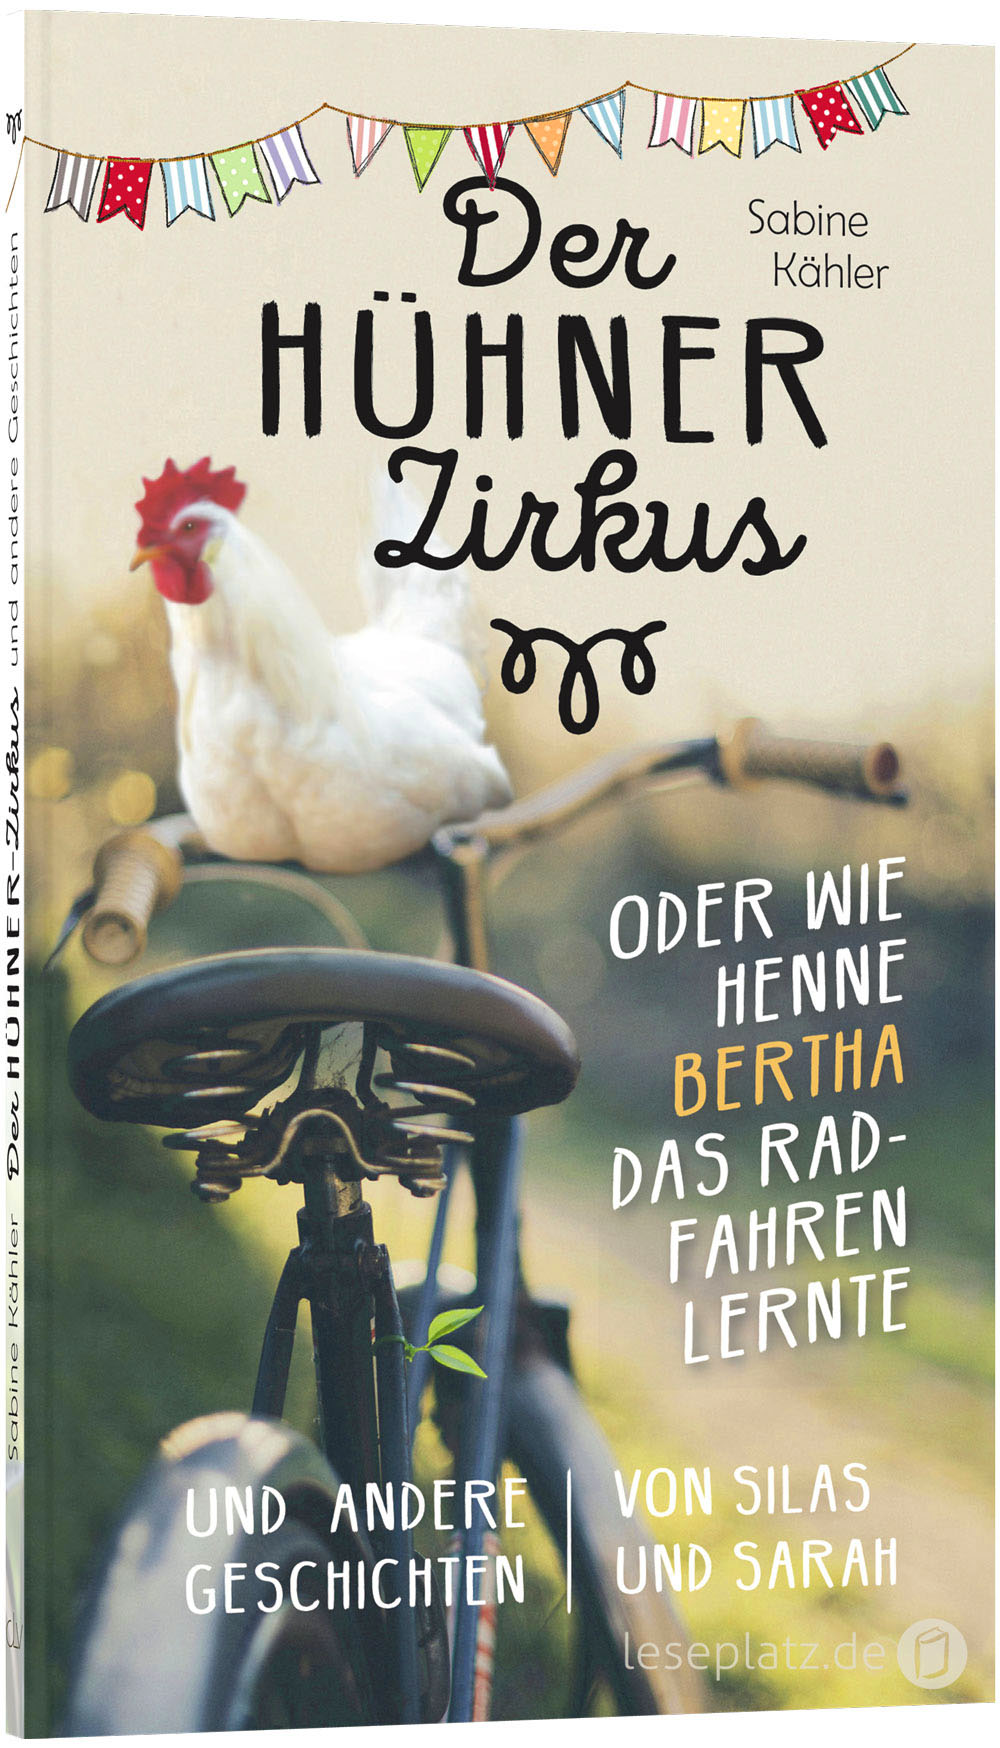 Der Hühnerzirkus oder Wie Henne Bertha das Radfahren lernte